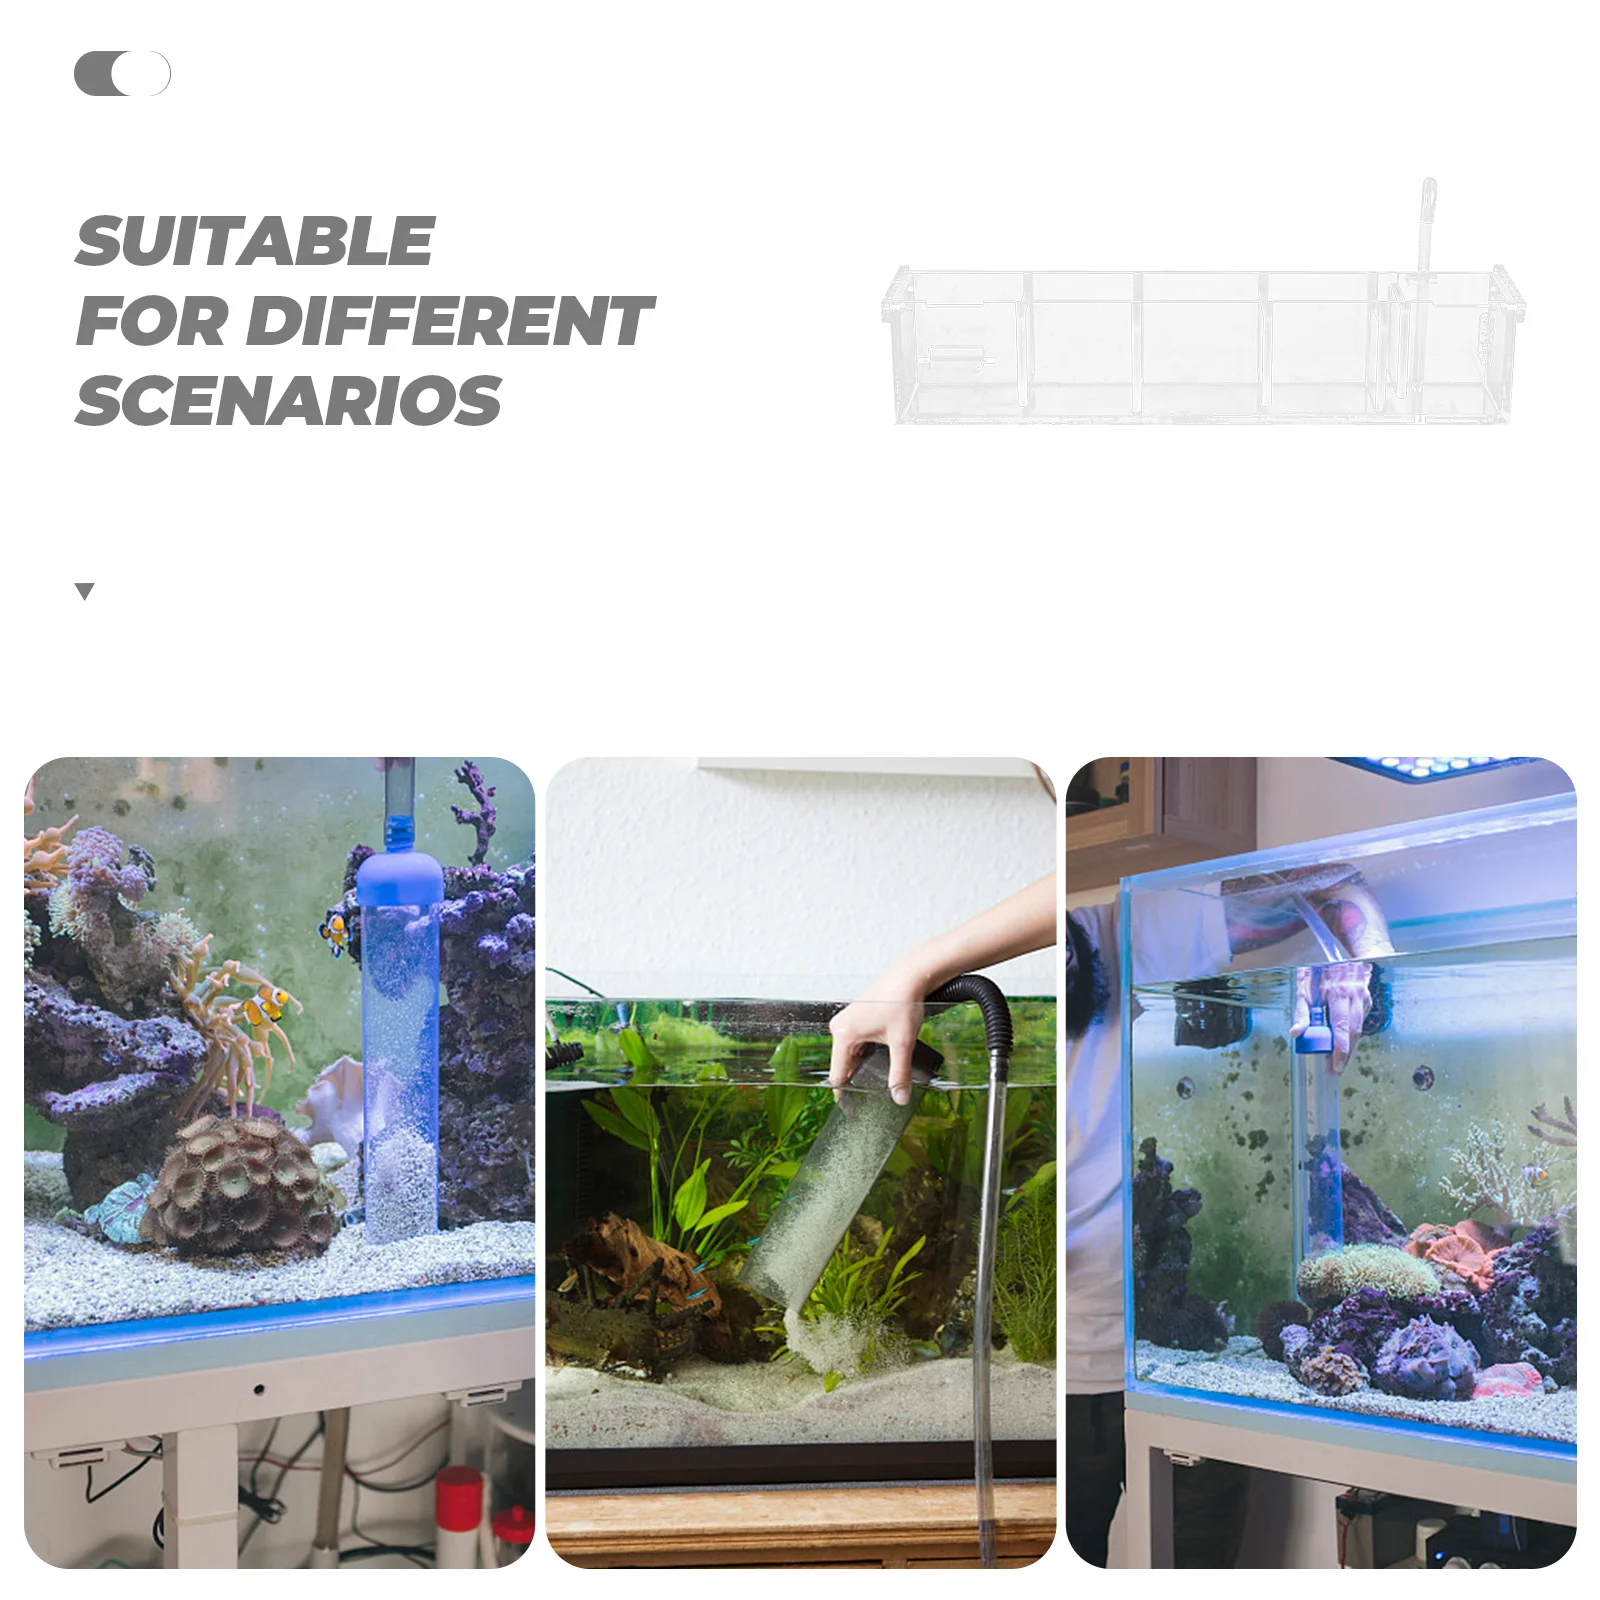 Boîte filtrante pour aquarium, boîte filtrante pour poisson silencieux, boîte filtrante supérieure, boîte filtrante pour cascade externe, étui de rangement filtrant, 3 1